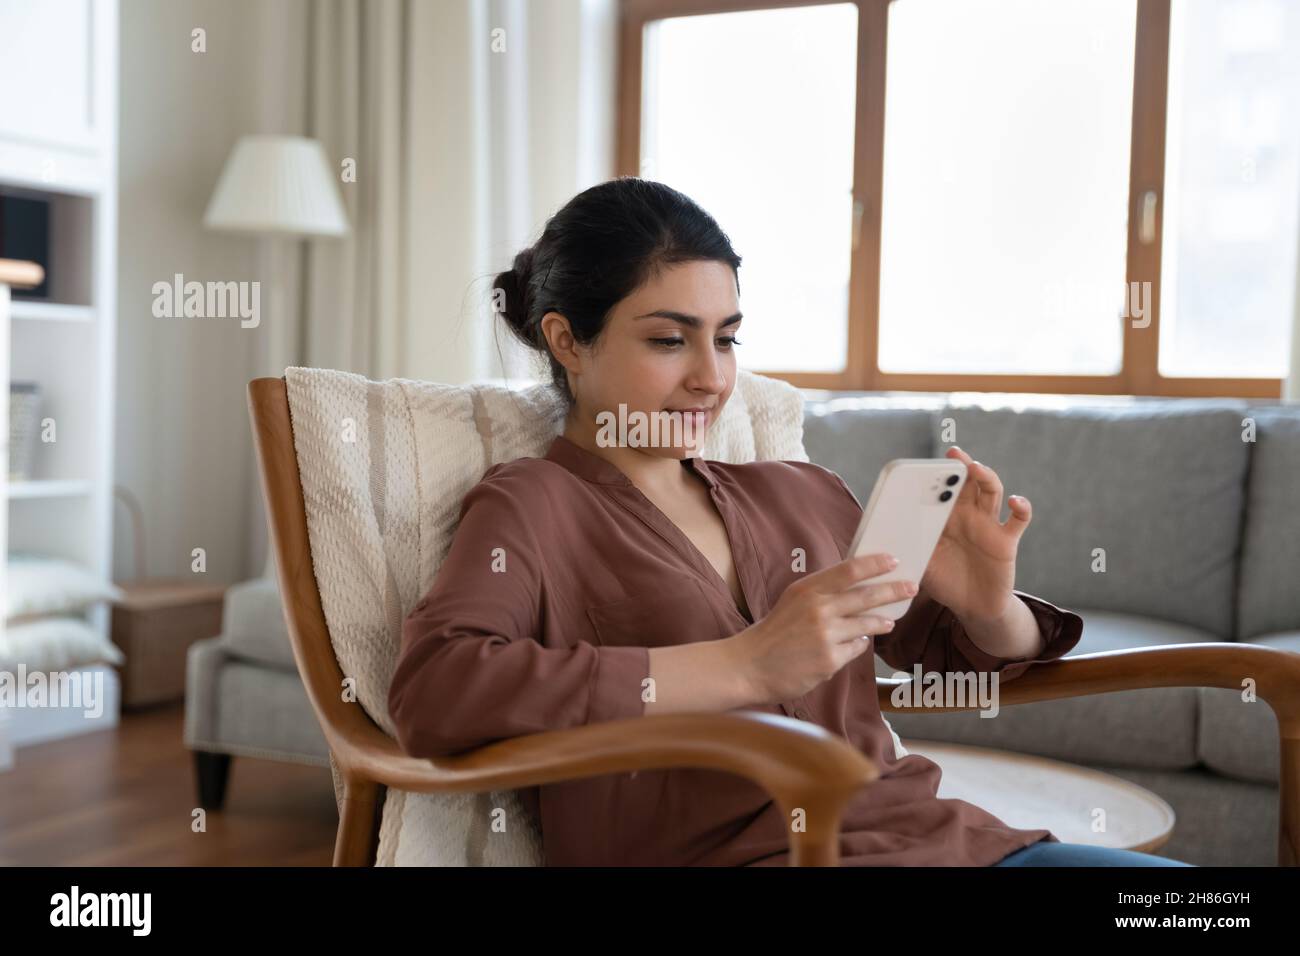 Jeune femme indienne décontractée utilisant un téléphone portable, assise dans un fauteuil. Banque D'Images